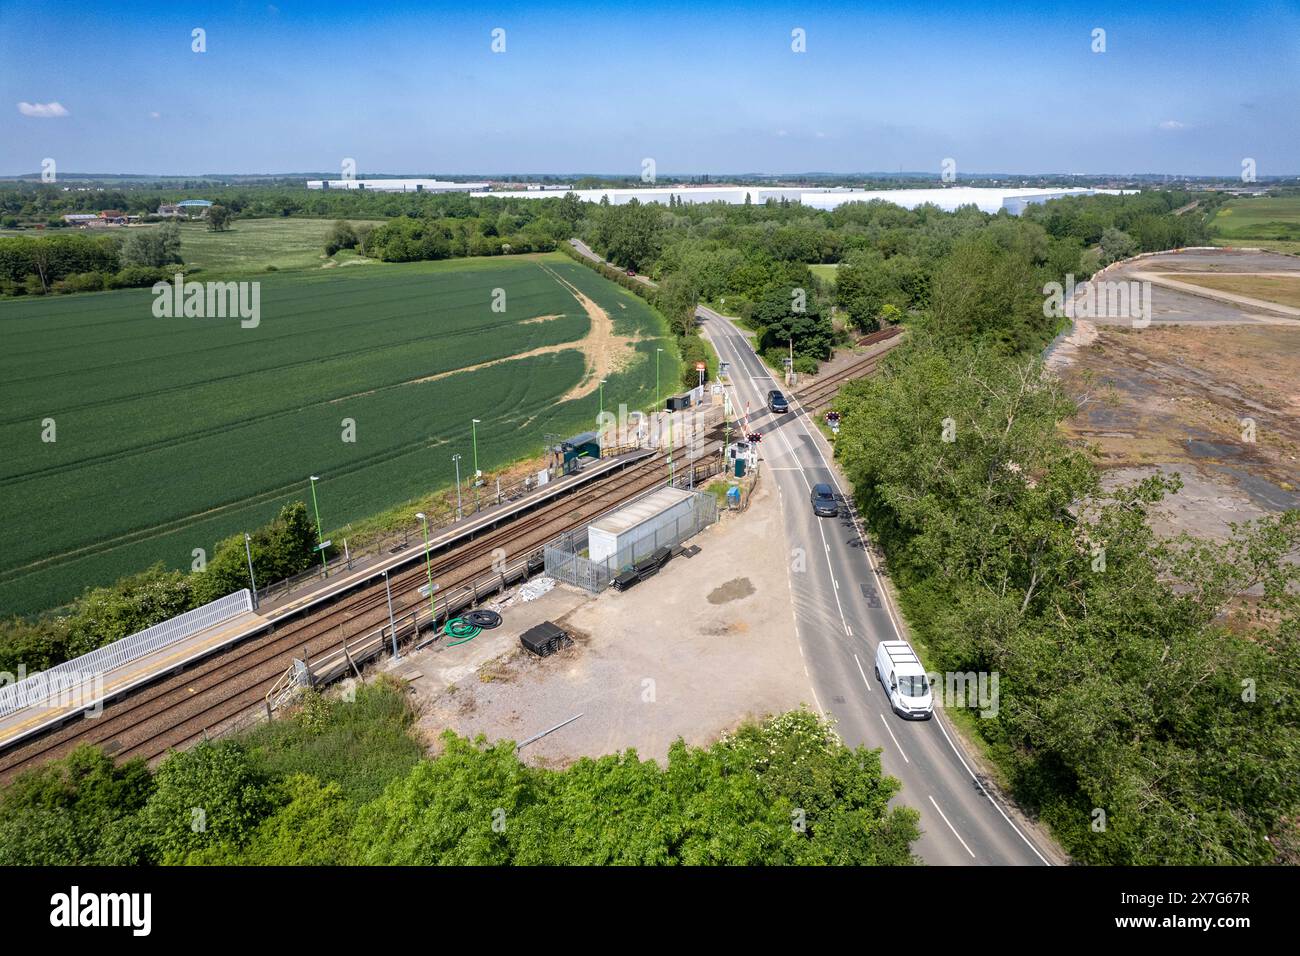 Una vista aerea con droni della stazione ferroviaria di Kempston Hardwick sulla ferrovia est-ovest vicino a Bedford e al potenziale resort Universal Studios UK Foto Stock